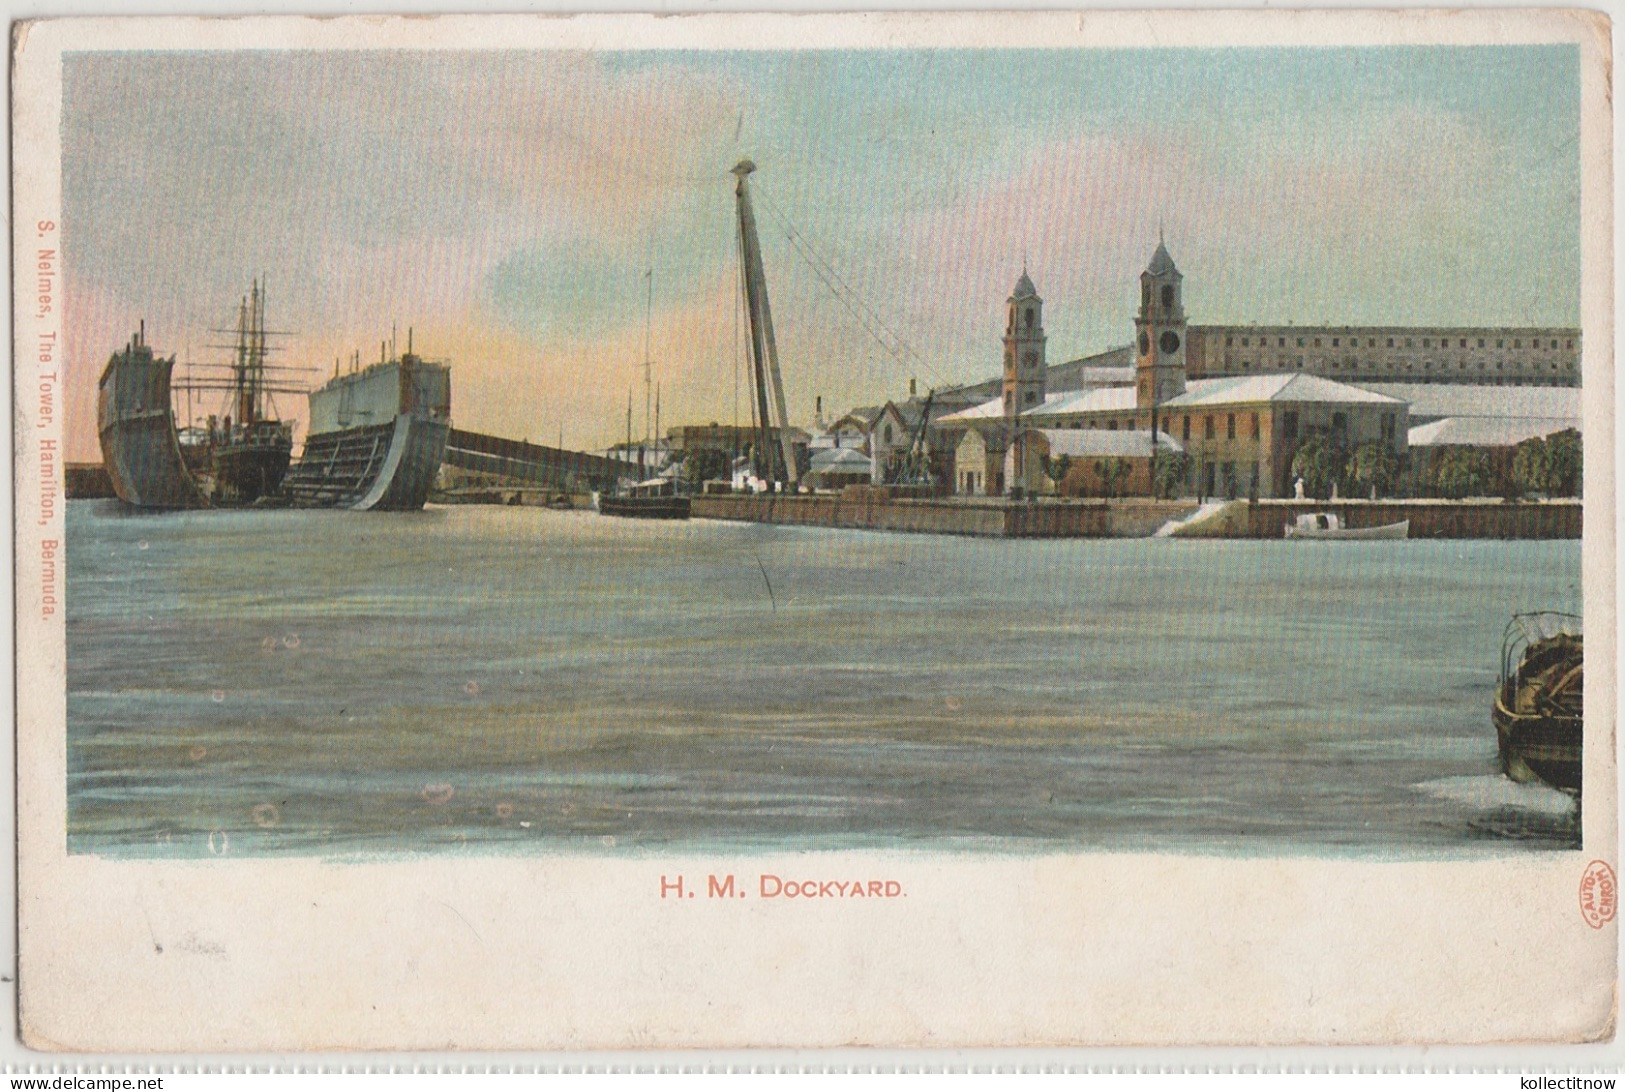 H.M DOCKYARD - BERMUDA - Bermuda